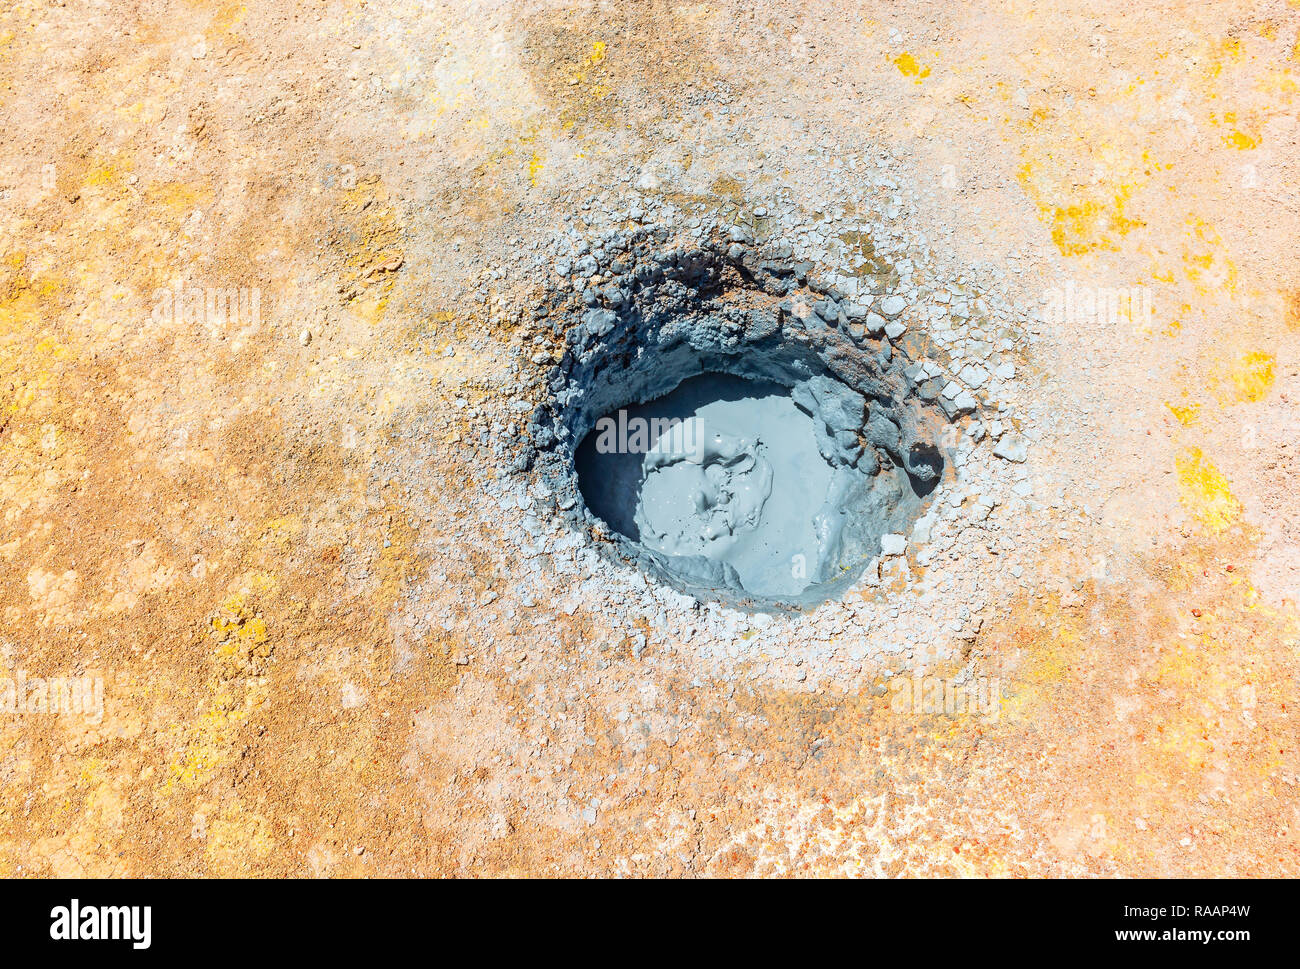 Ein Mud pit in der vulkanisch aktiven Hot Spot von Sol de Mañana im Altiplano Boliviens zwischen dem Salzsee von Uyuni und die Atacama Wüste. Stockfoto